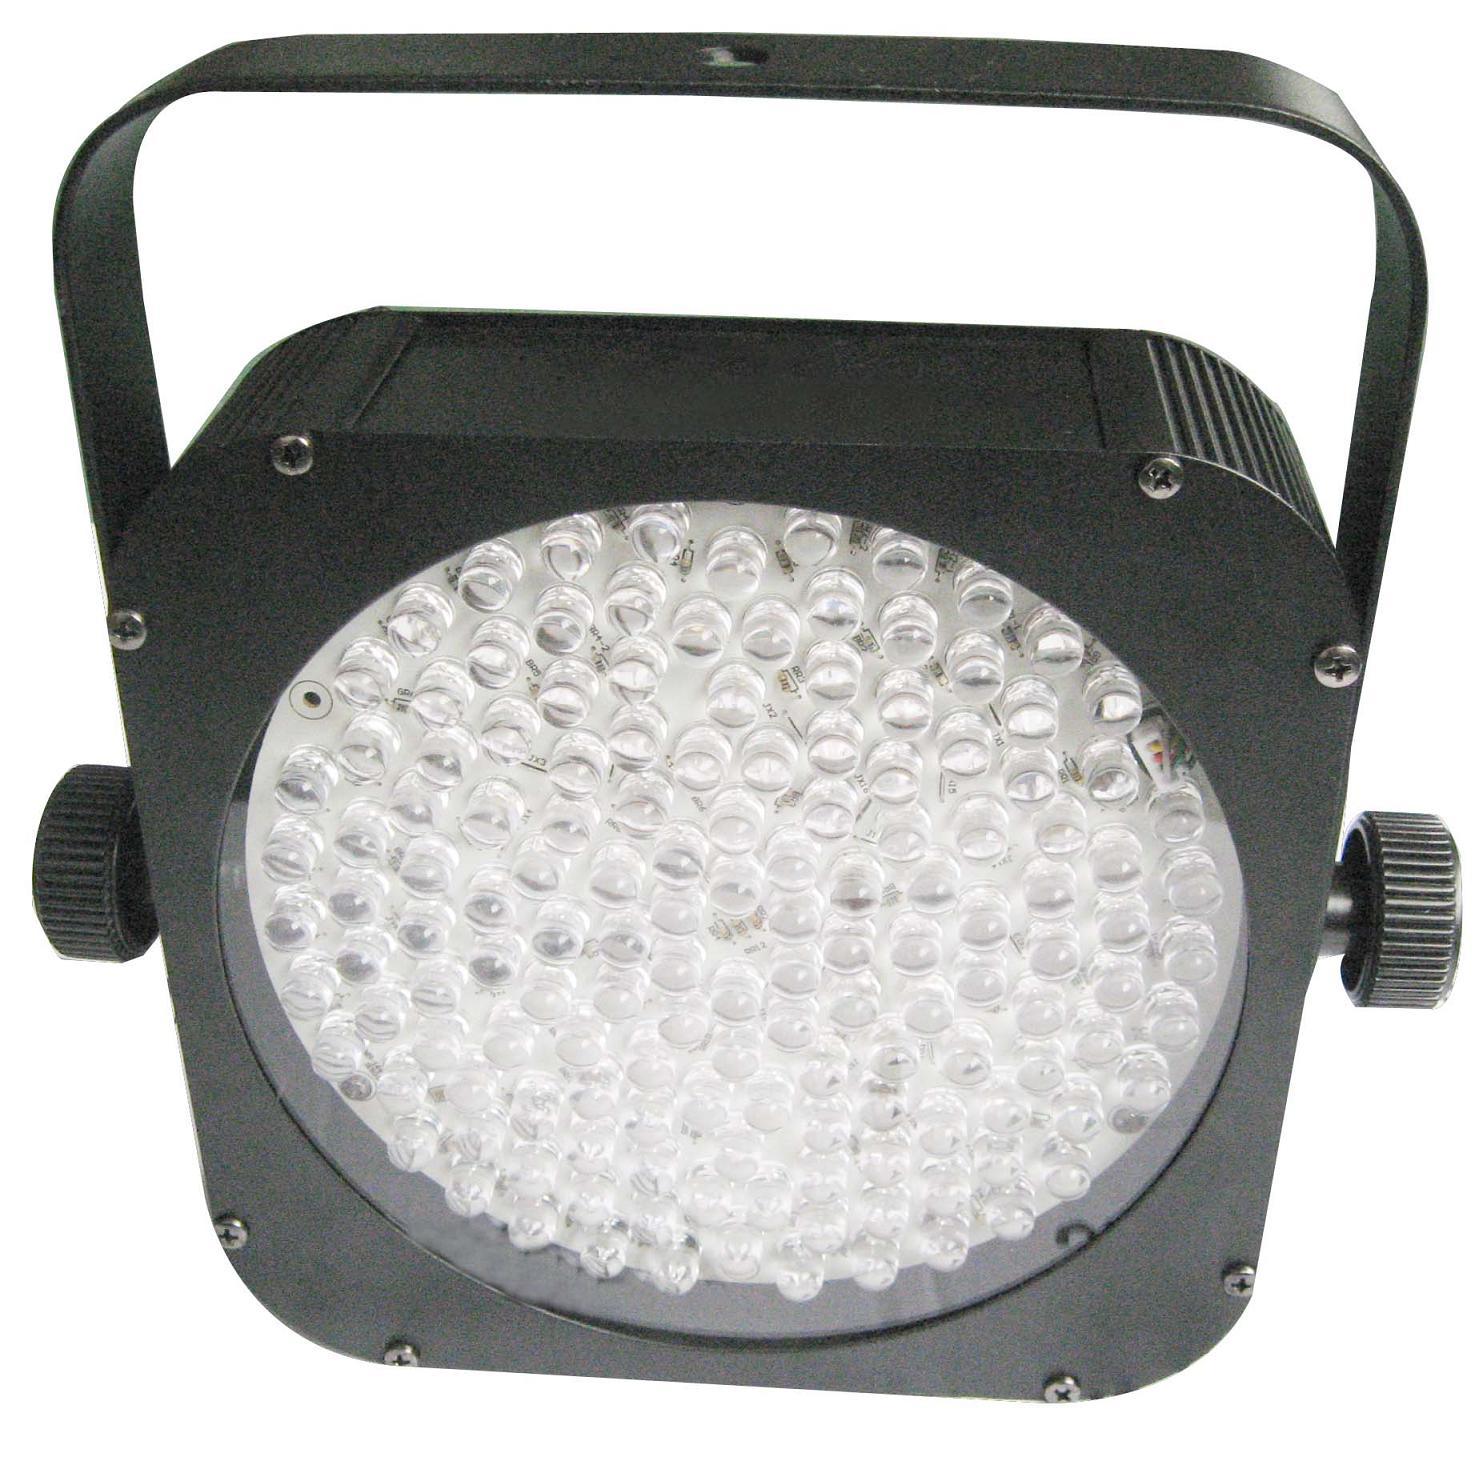 LED PAR Cans / Stage Light (MS-144)